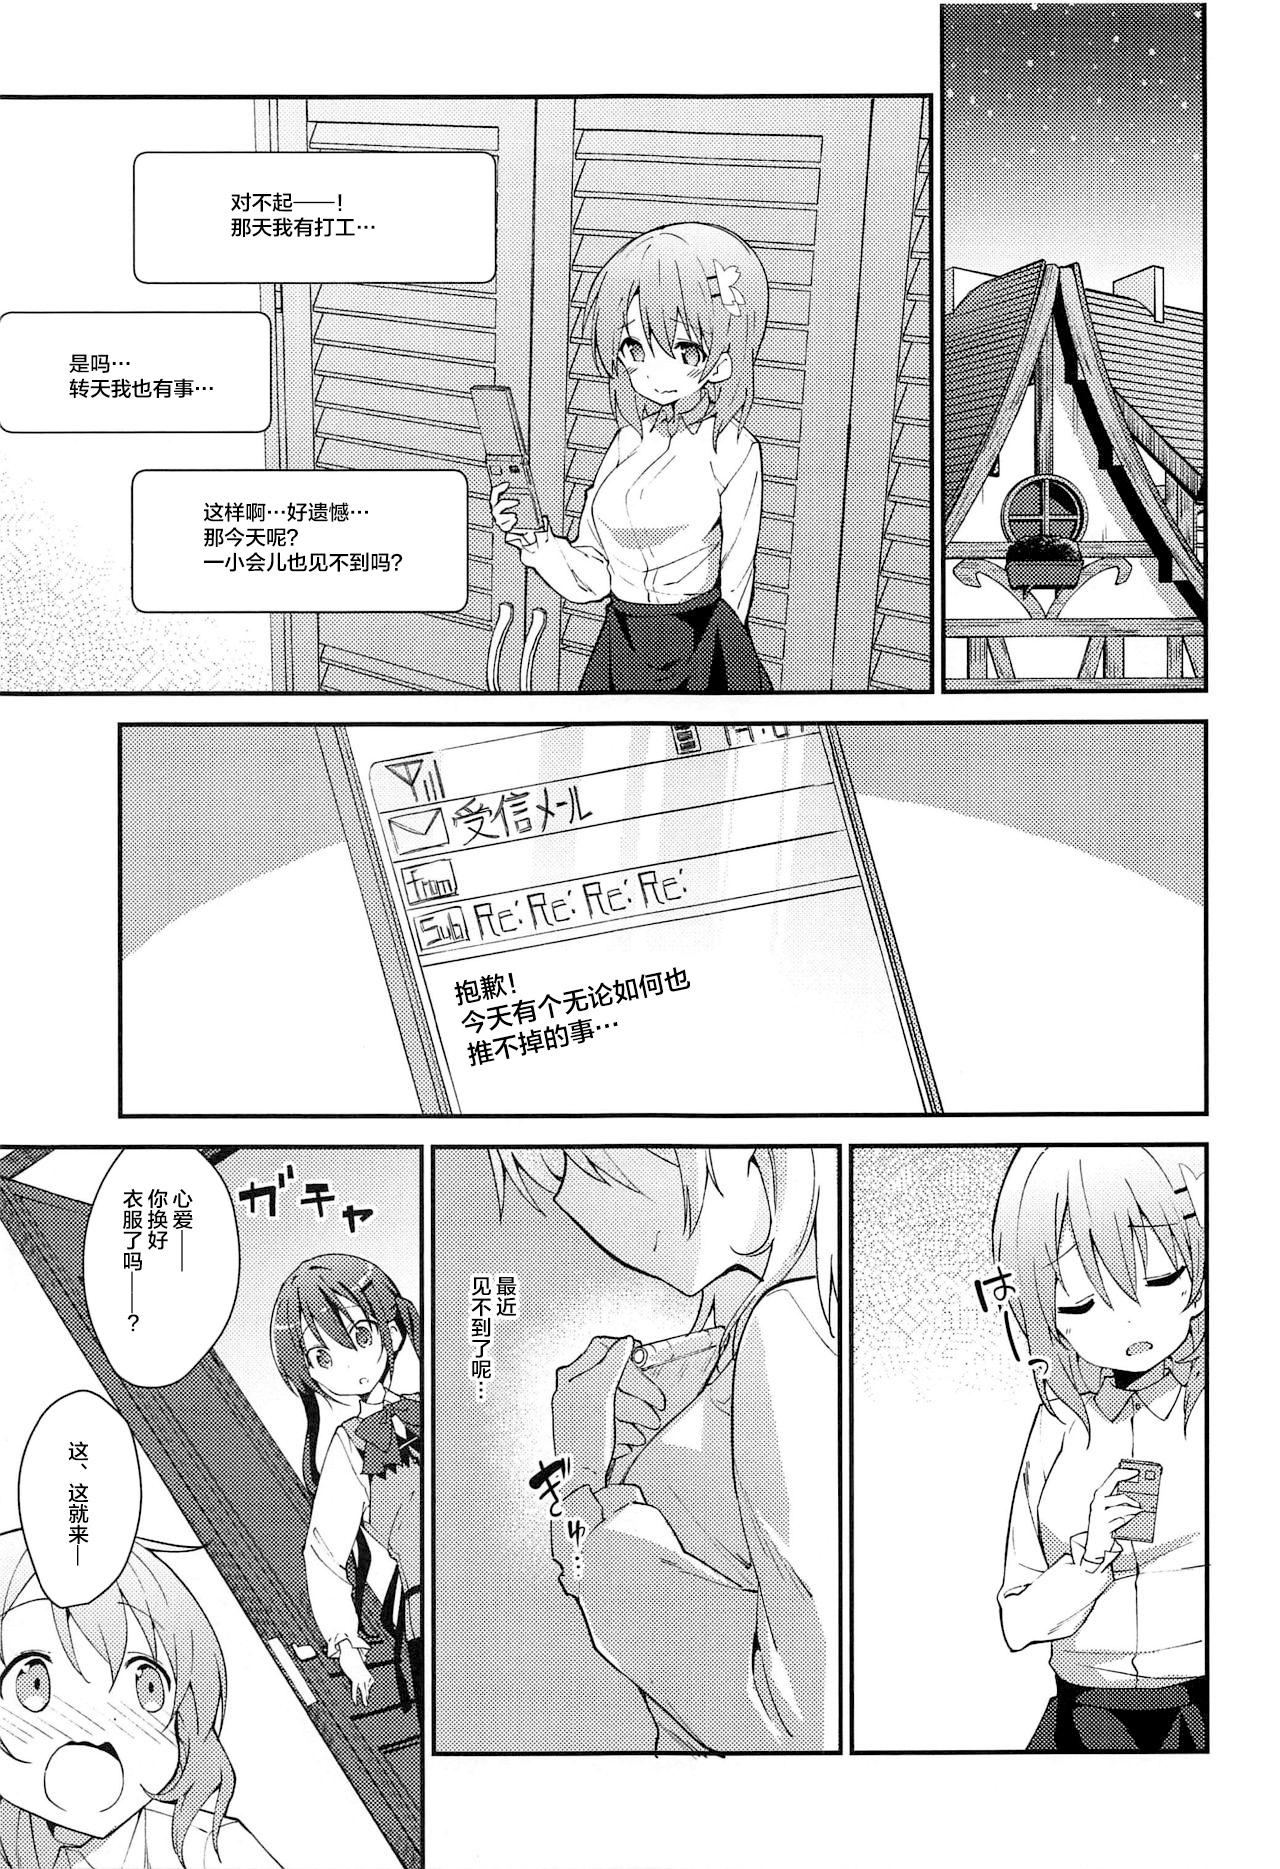 Prostituta Attakai Kokoa wa Ikaga desu ka? - How about warm cocoa? - Gochuumon wa usagi desu ka Amateur Blowjob - Page 5